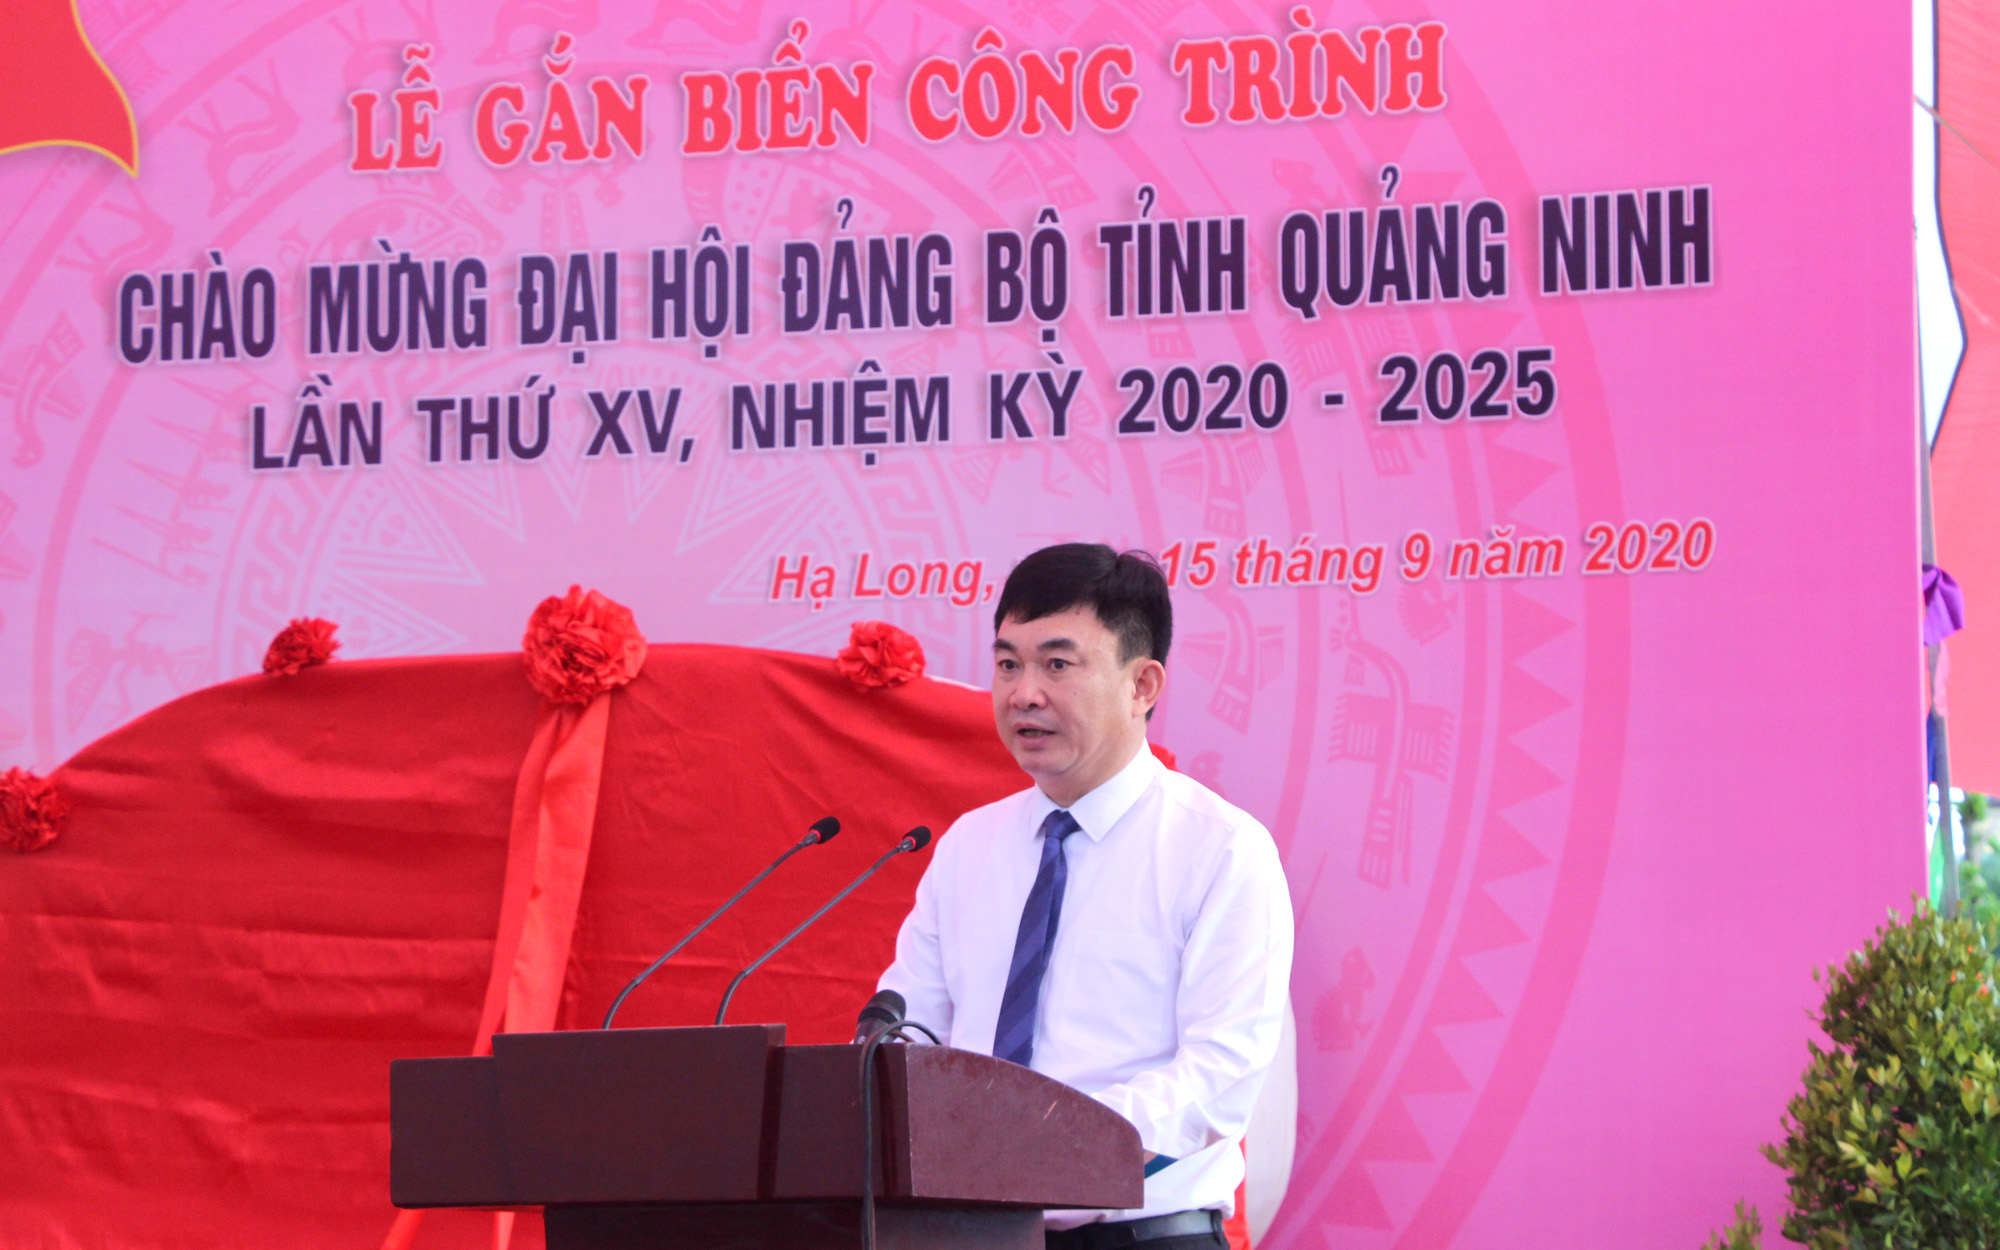 Đồng chí Ngô Hoàng Ngân, Phó Bí thư Thường trực Tỉnh ủy, phát biểu tại buổi lễ.